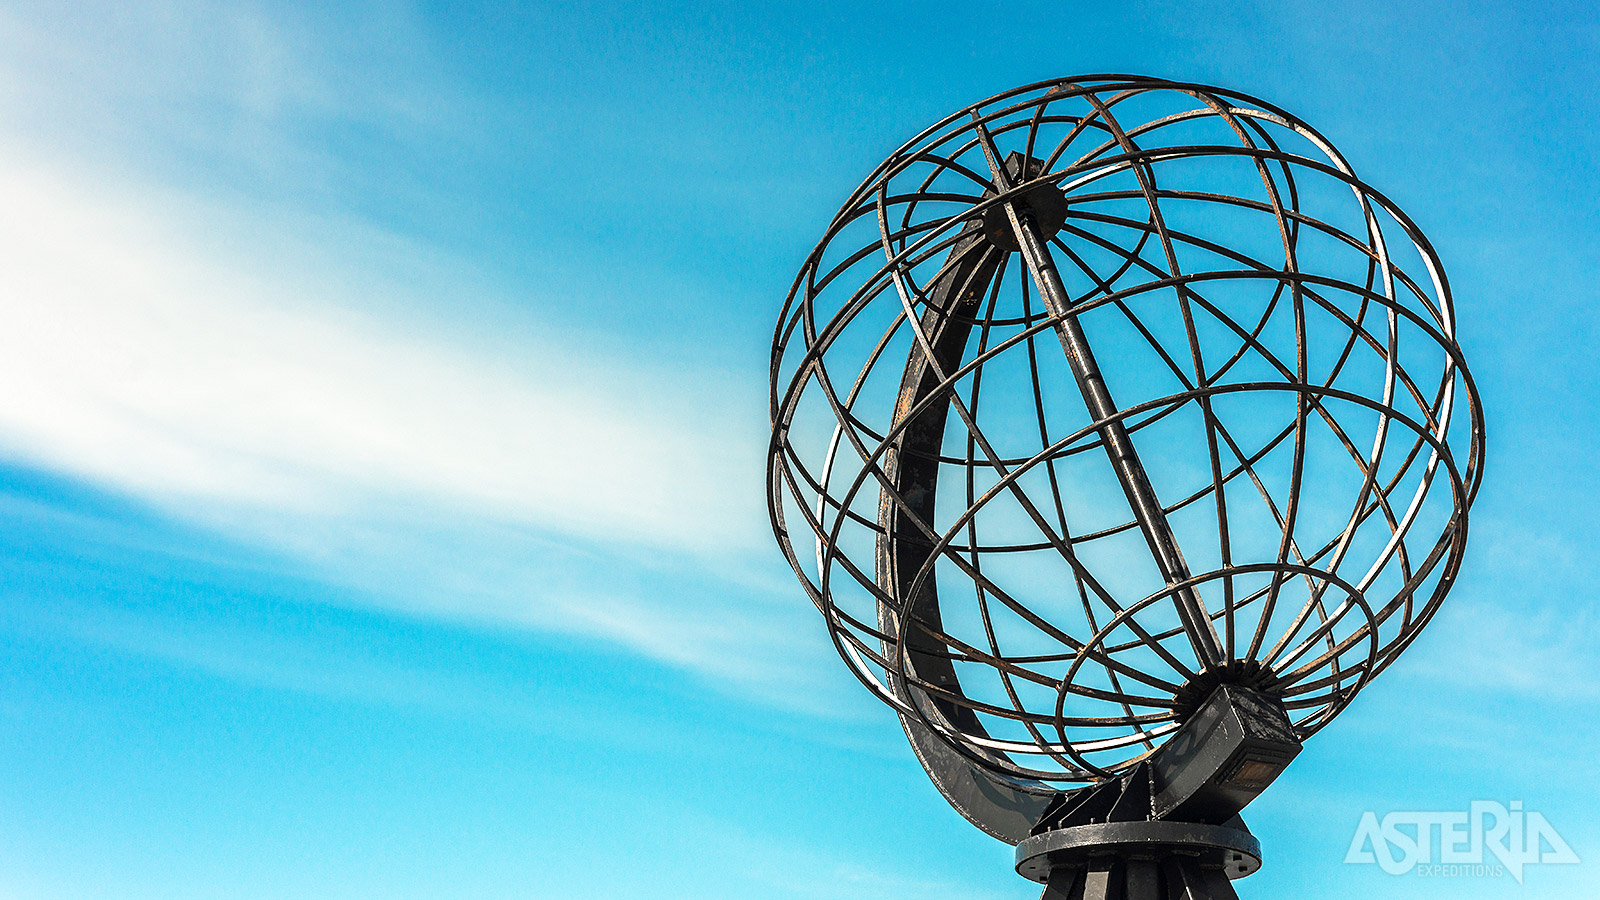 De metalen wereldbol op de Noordkaap staat symbool voor het bereiken van het noordelijkste puntje van het Europese continent